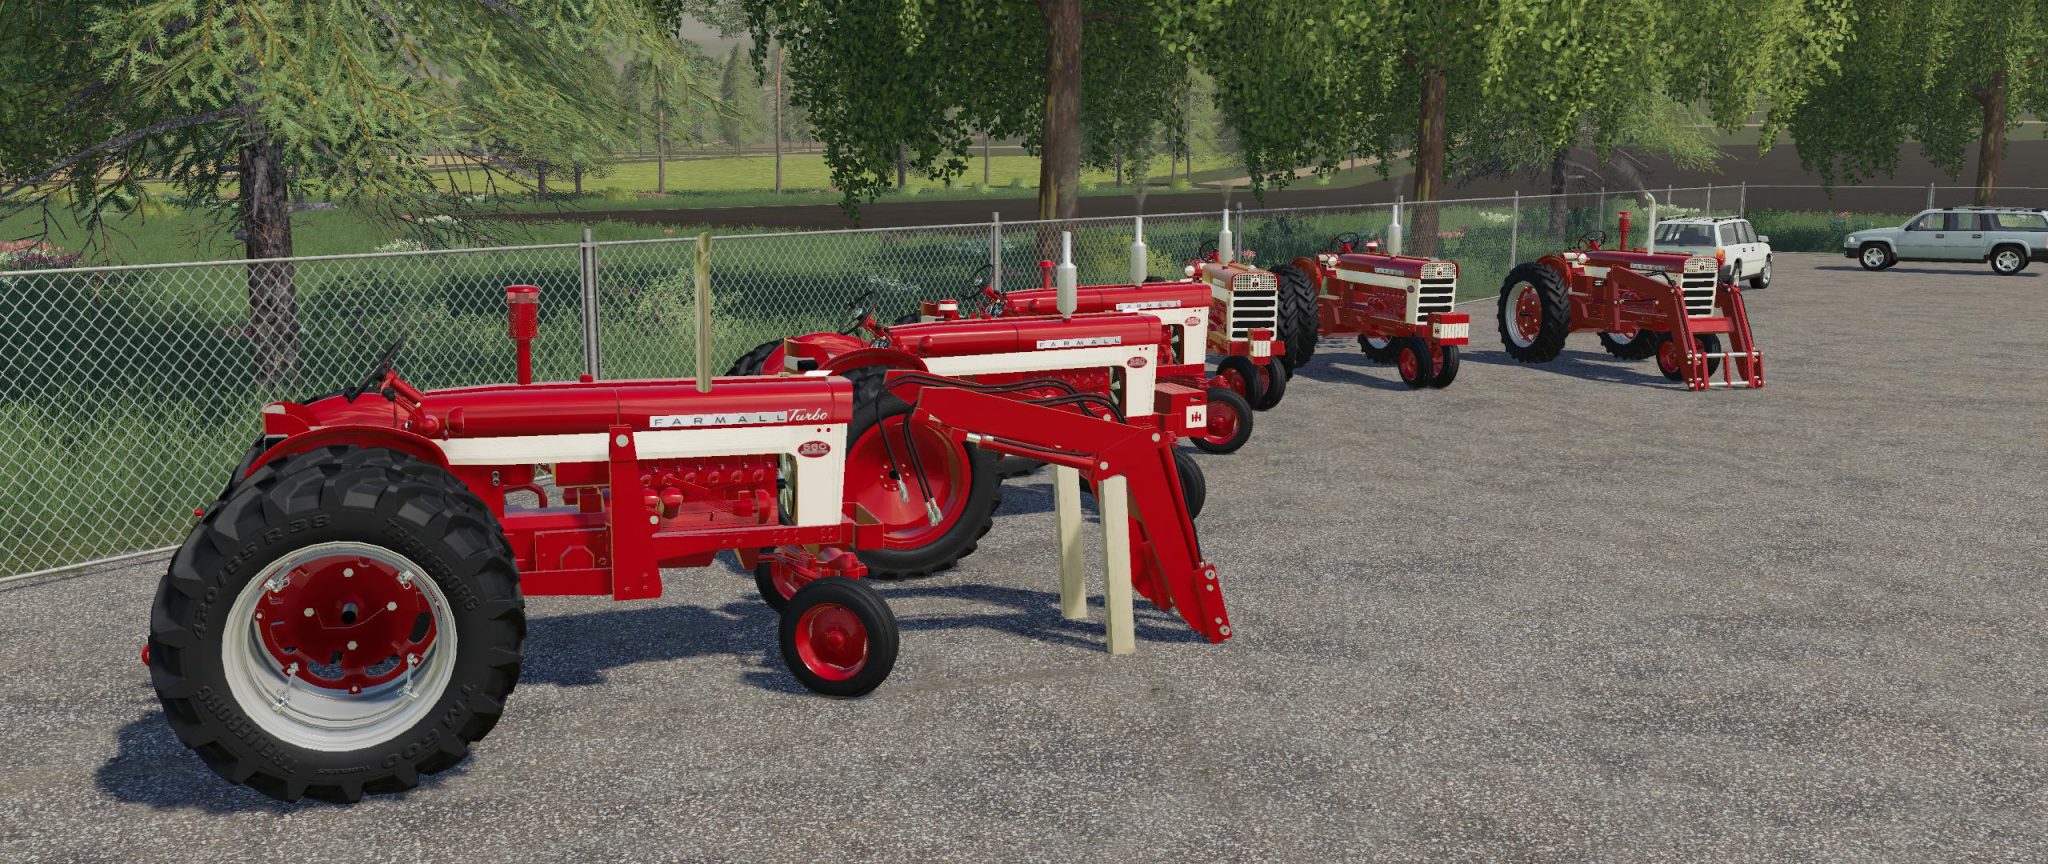 Mod Farmall 460 560 V11 Farming Simulator 22 Mod Ls22 Mod Download 7824